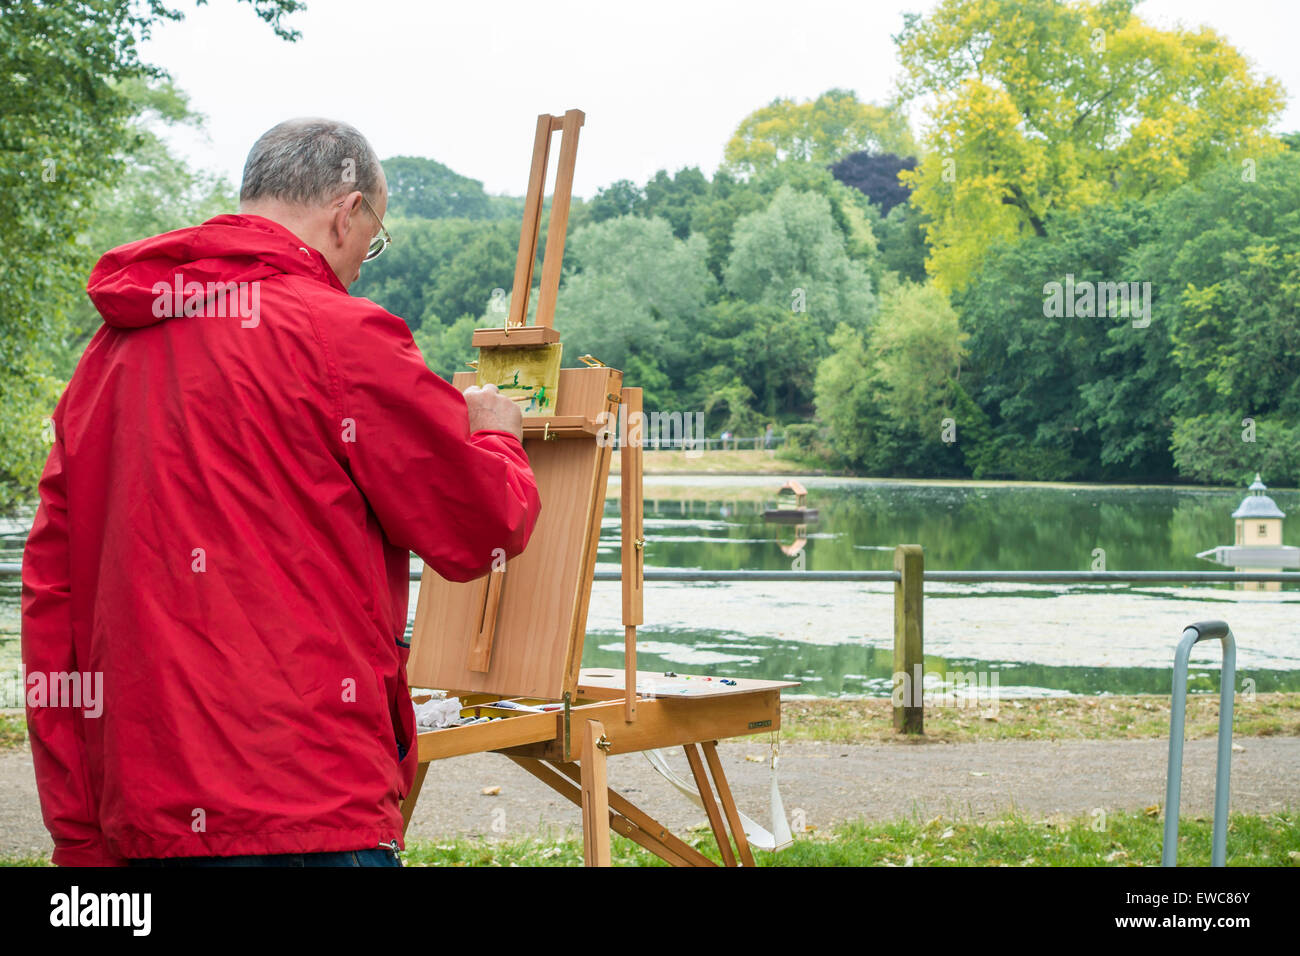 Artiste au travail étangs Londres Hampstead Peinture Banque D'Images